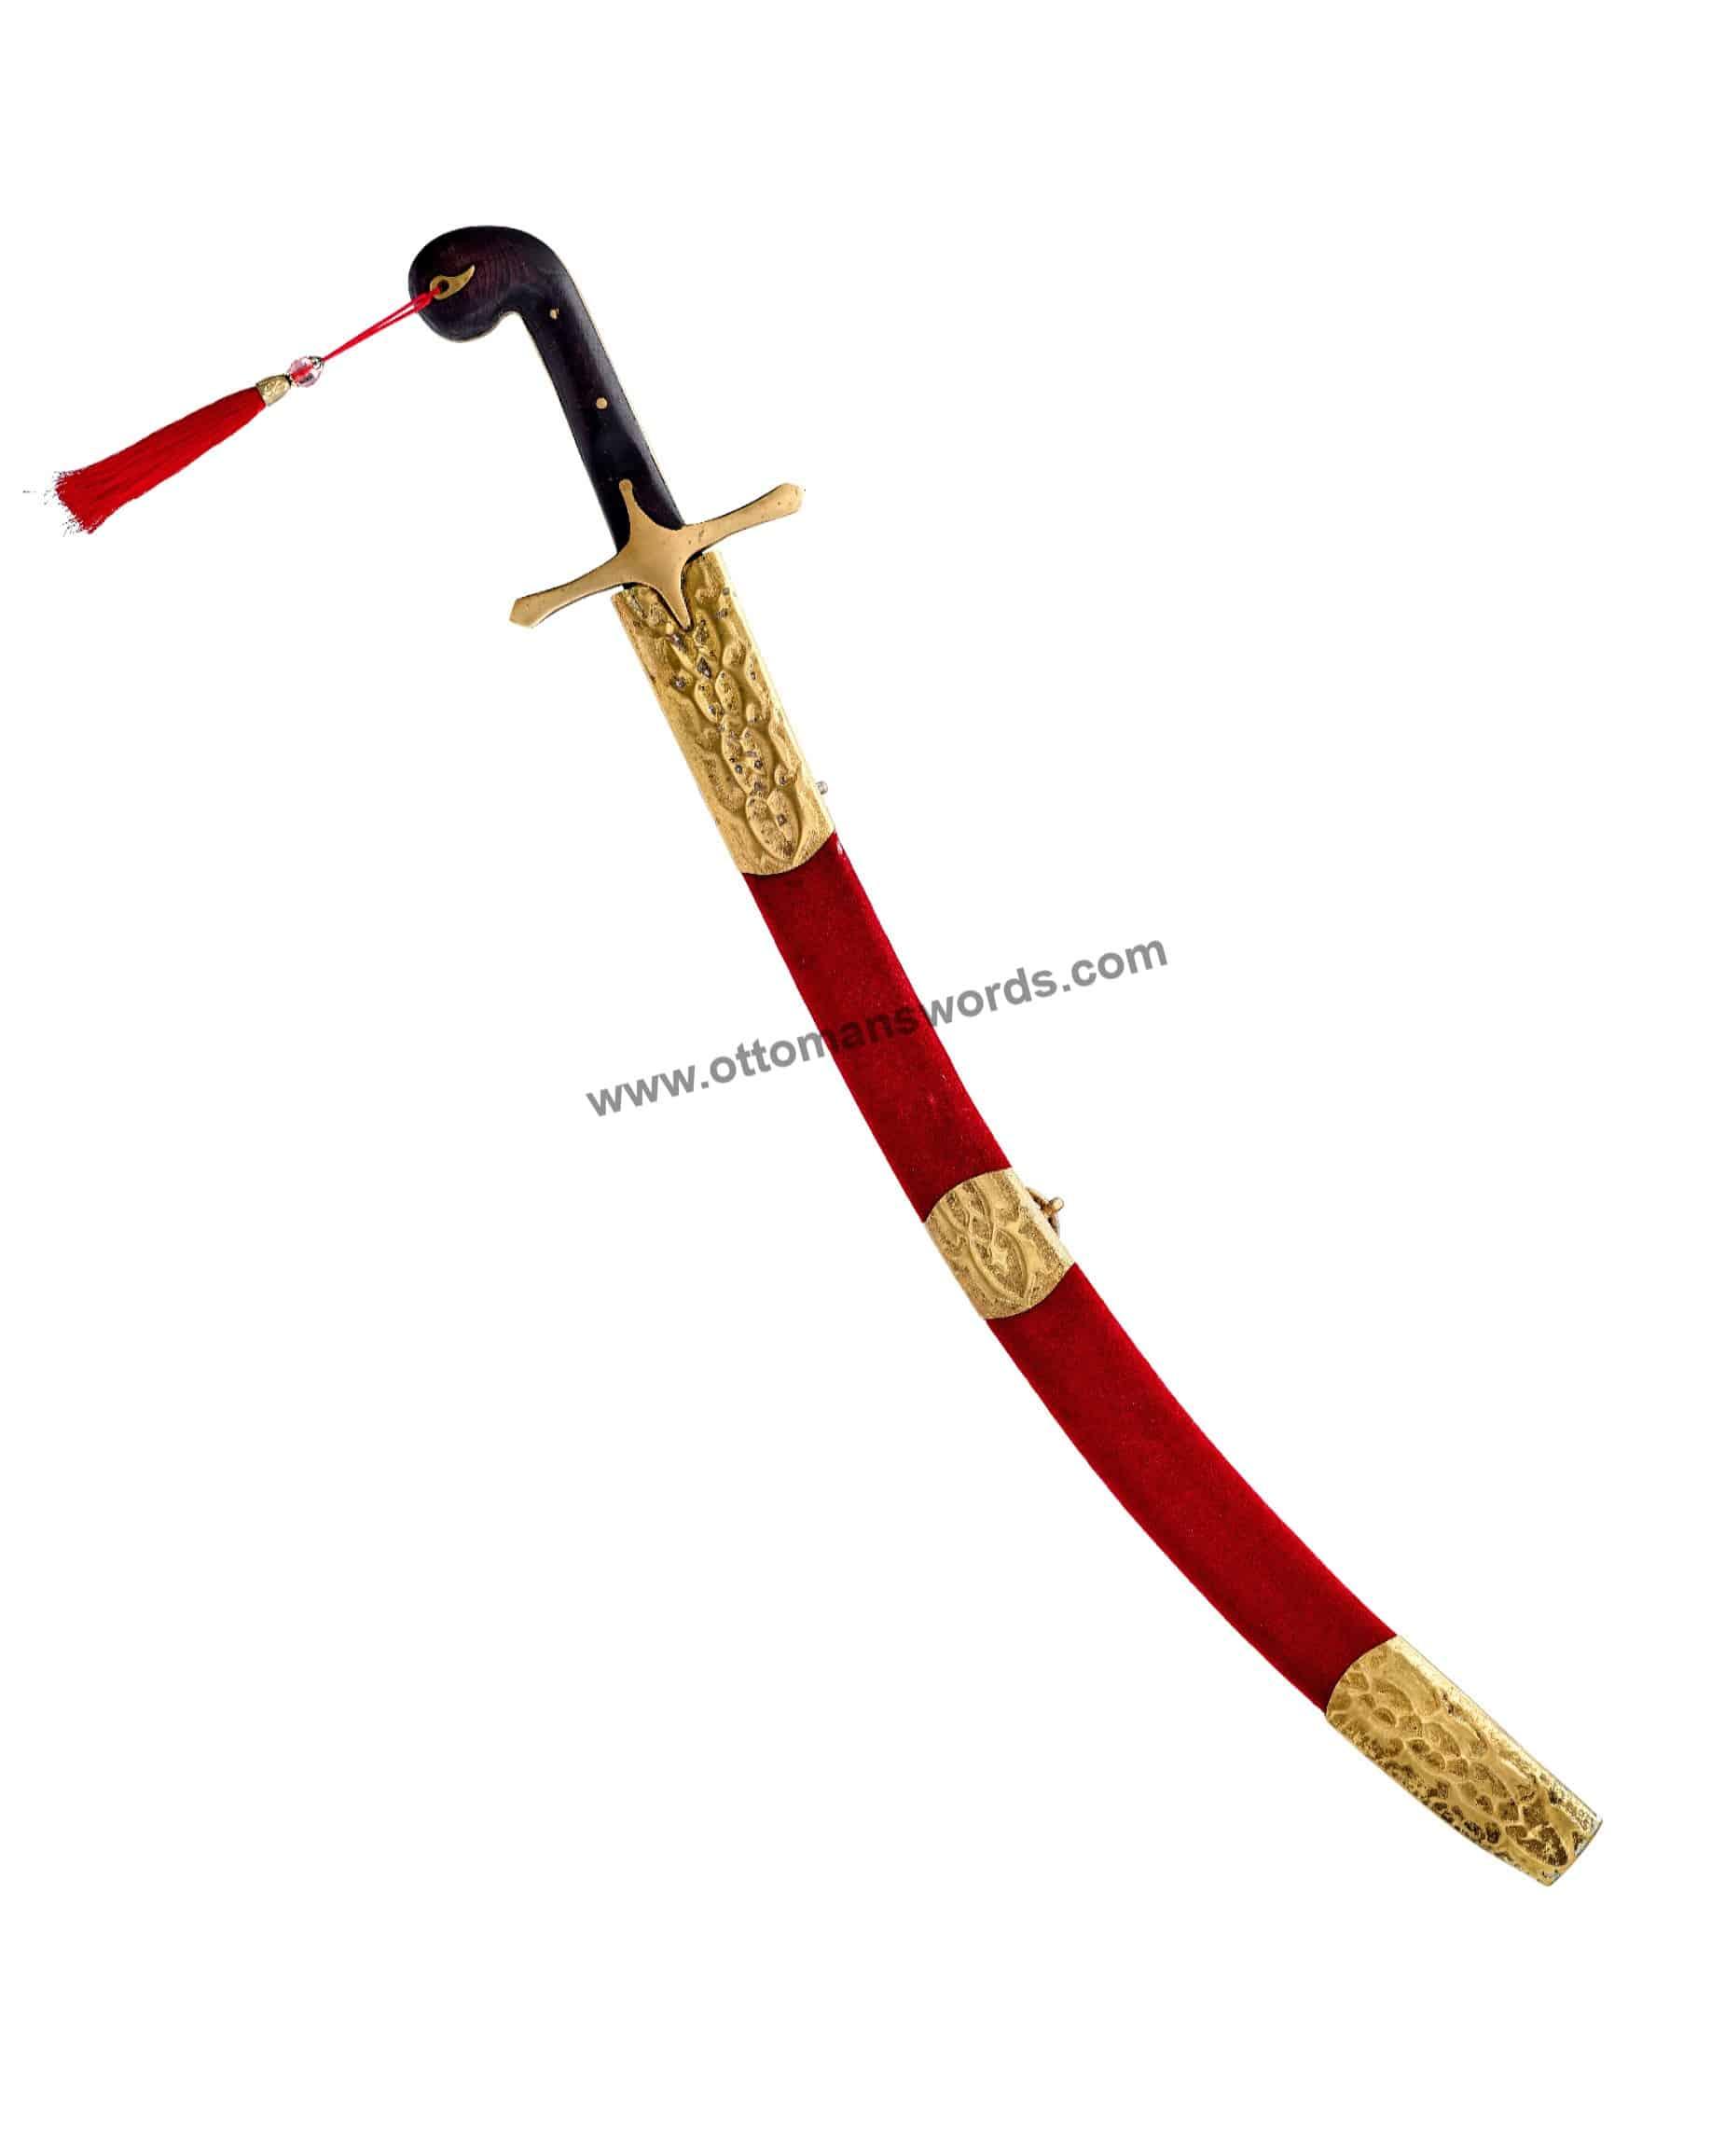 forge a sword ottoman swords (2)